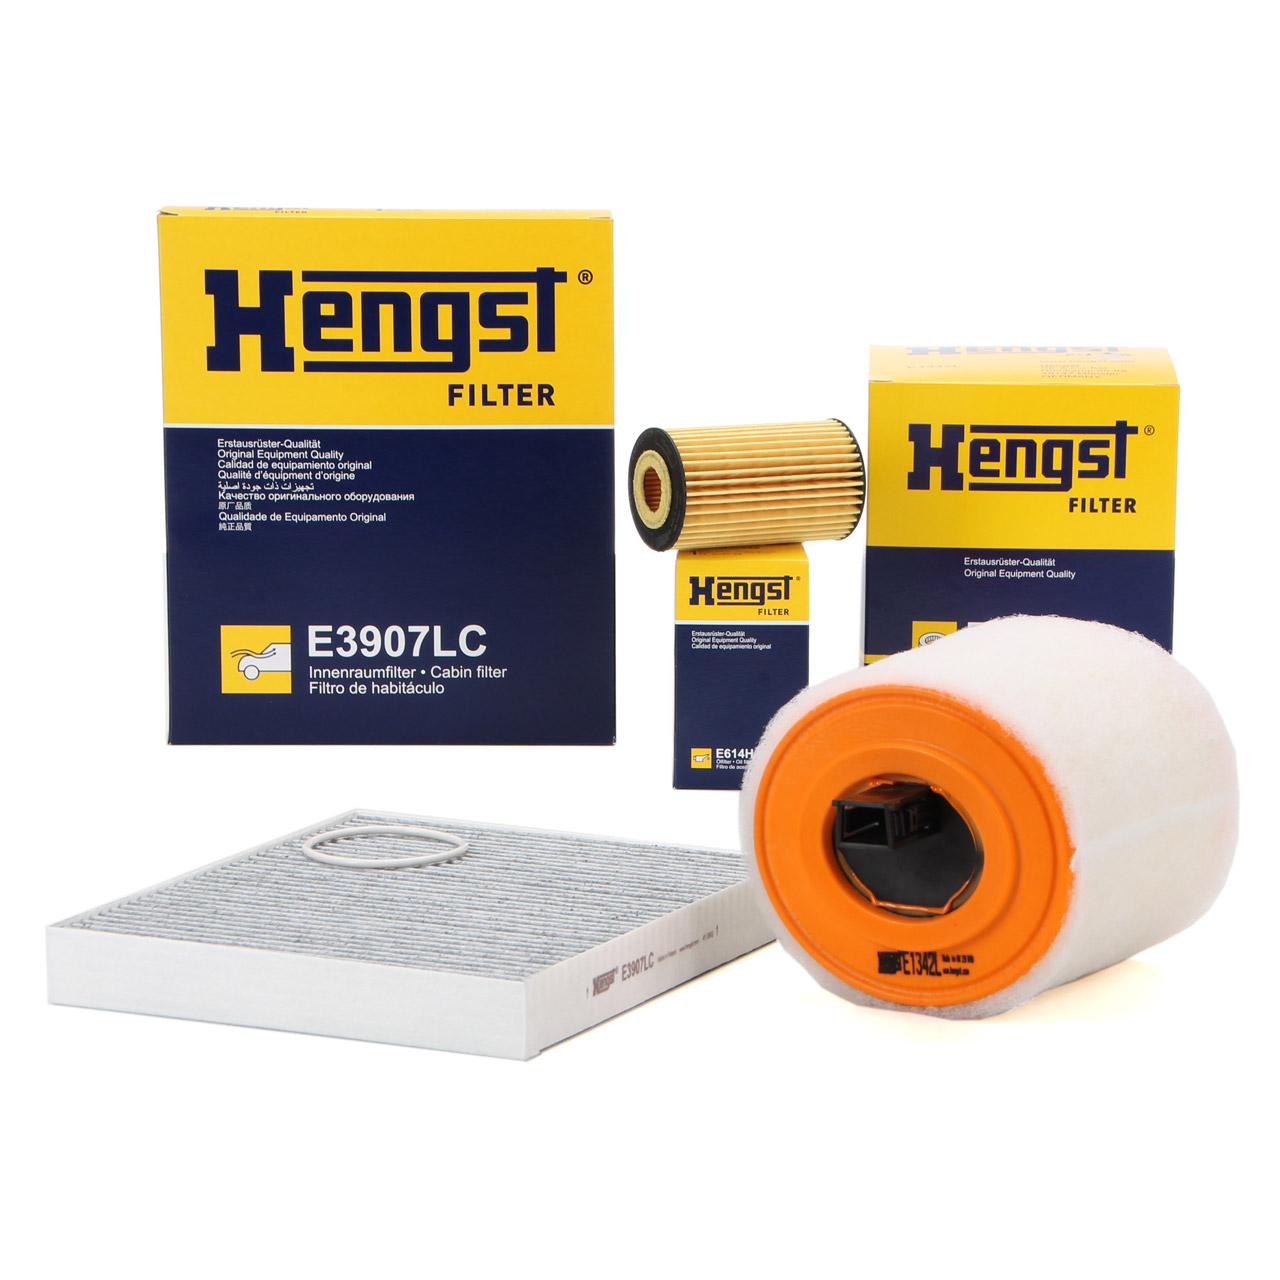 HENGST Filterset Filterpaket Inspektionskit OPEL Astra K 1.6 Turbo 200 PS